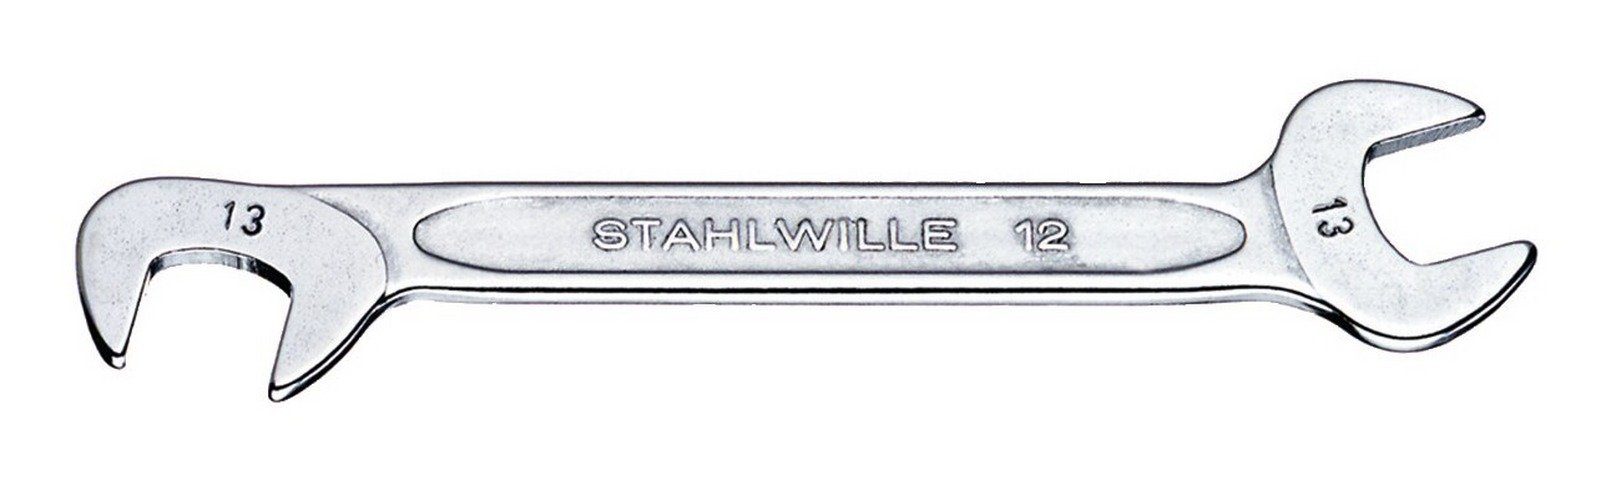 Stahlwille Maulschlüssel, Doppelmaulschlüssel klein 4,5 mm